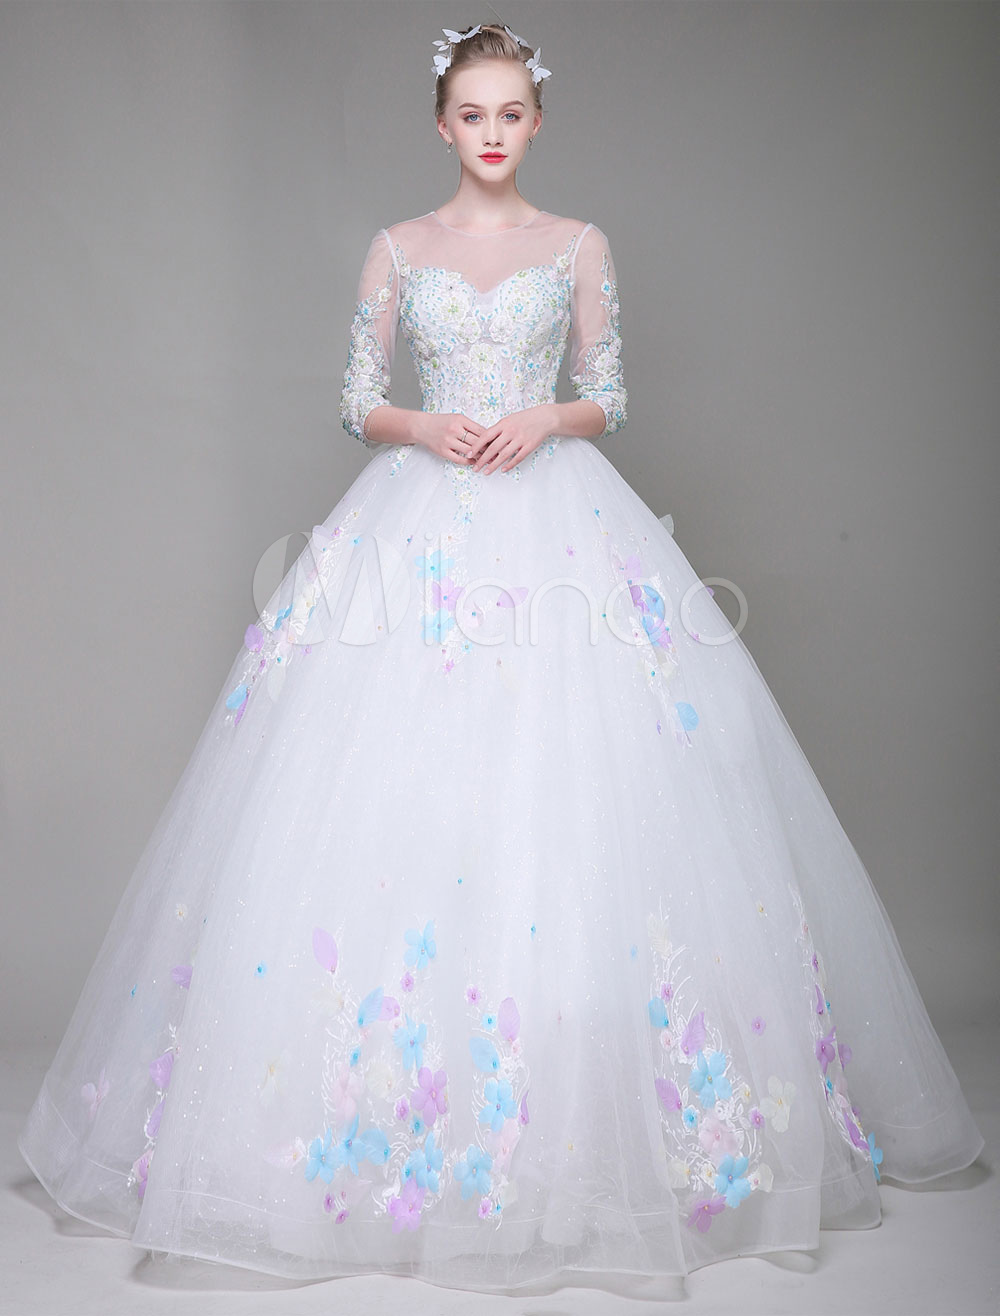 Hercegnő stílusú esküvői ruha (A Ft ár tájékoztató jellegű)